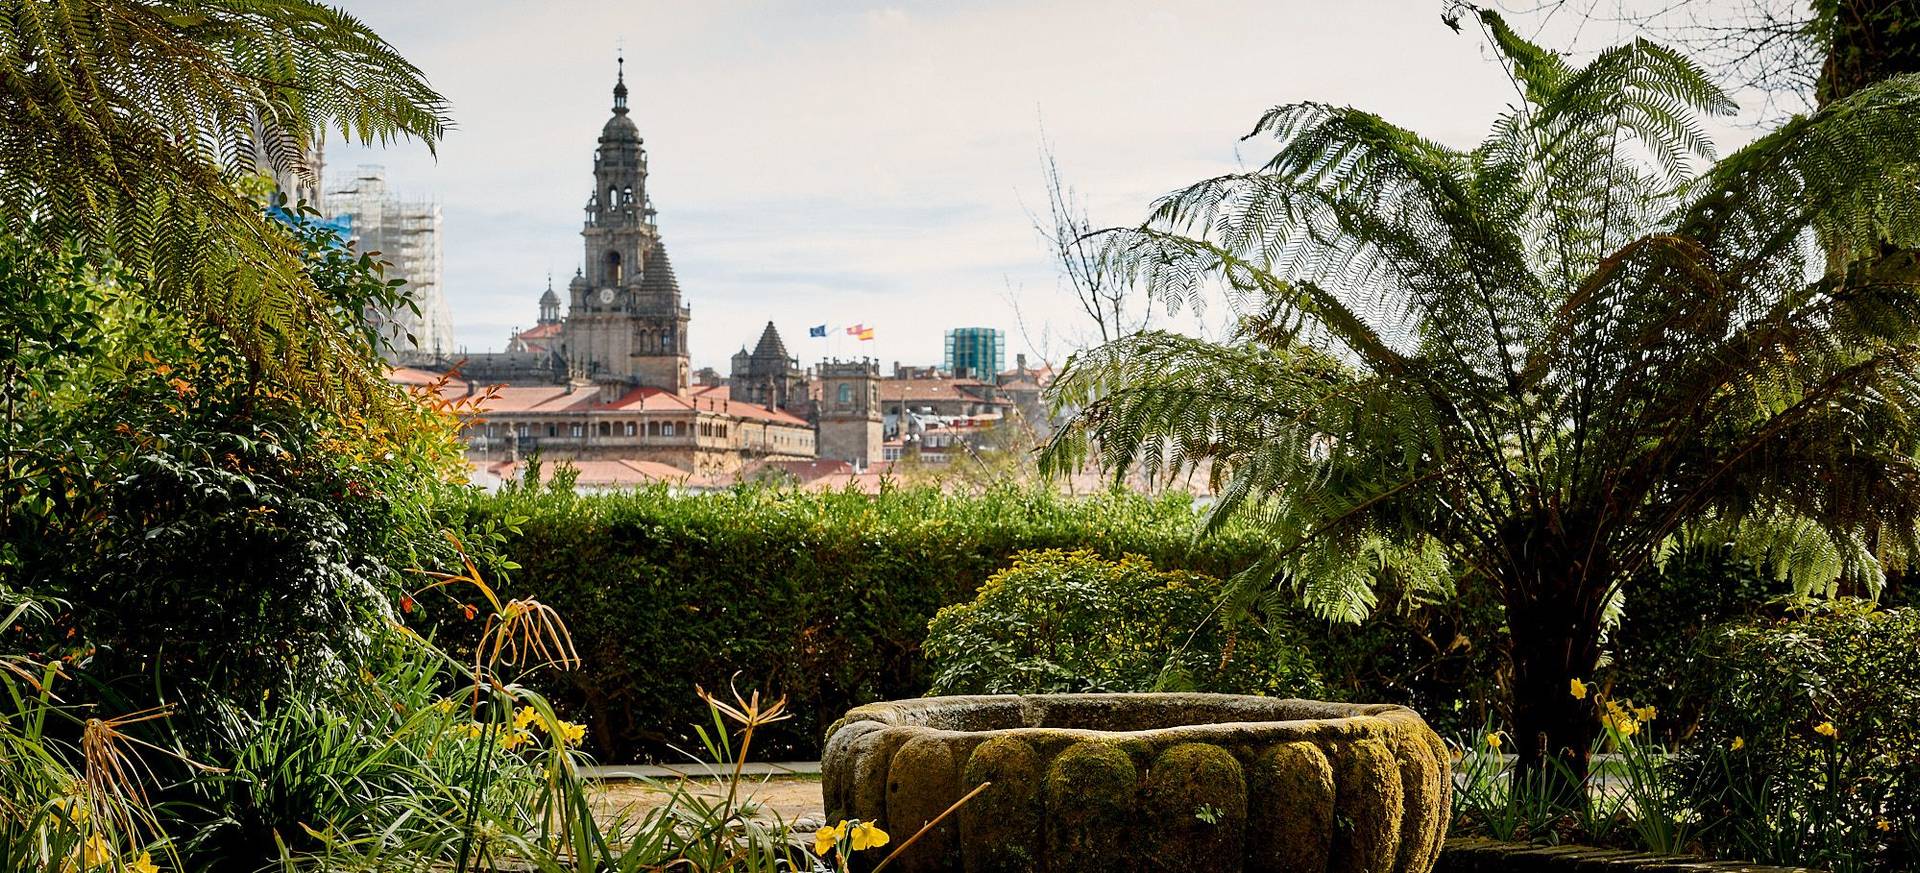 Santiago de Compostela – auf den Spuren der Jakobsmuschel